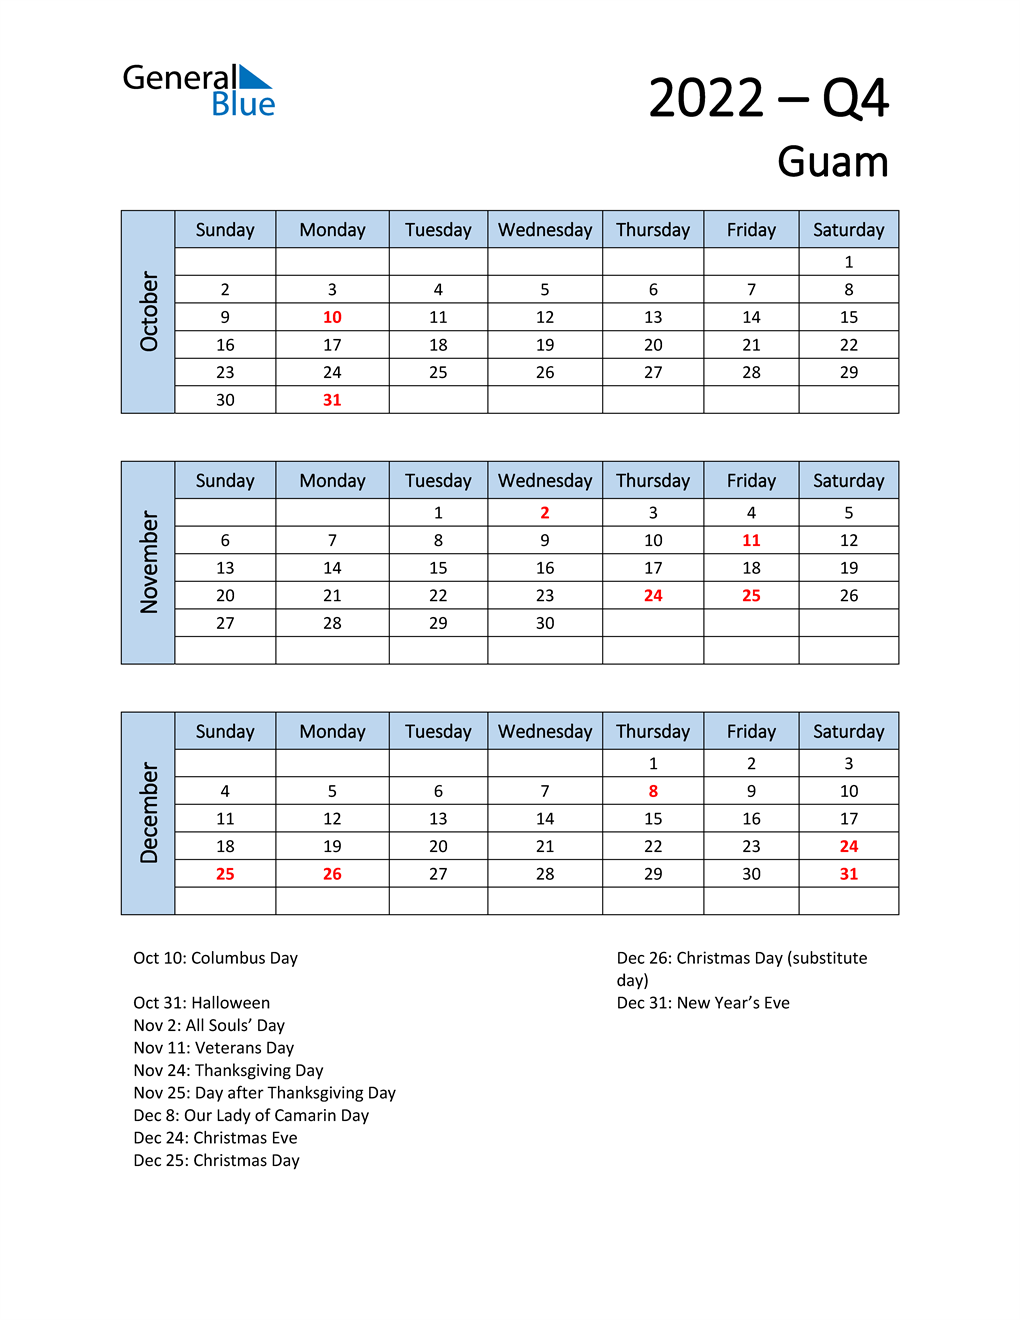  Free Q4 2022 Calendar for Guam